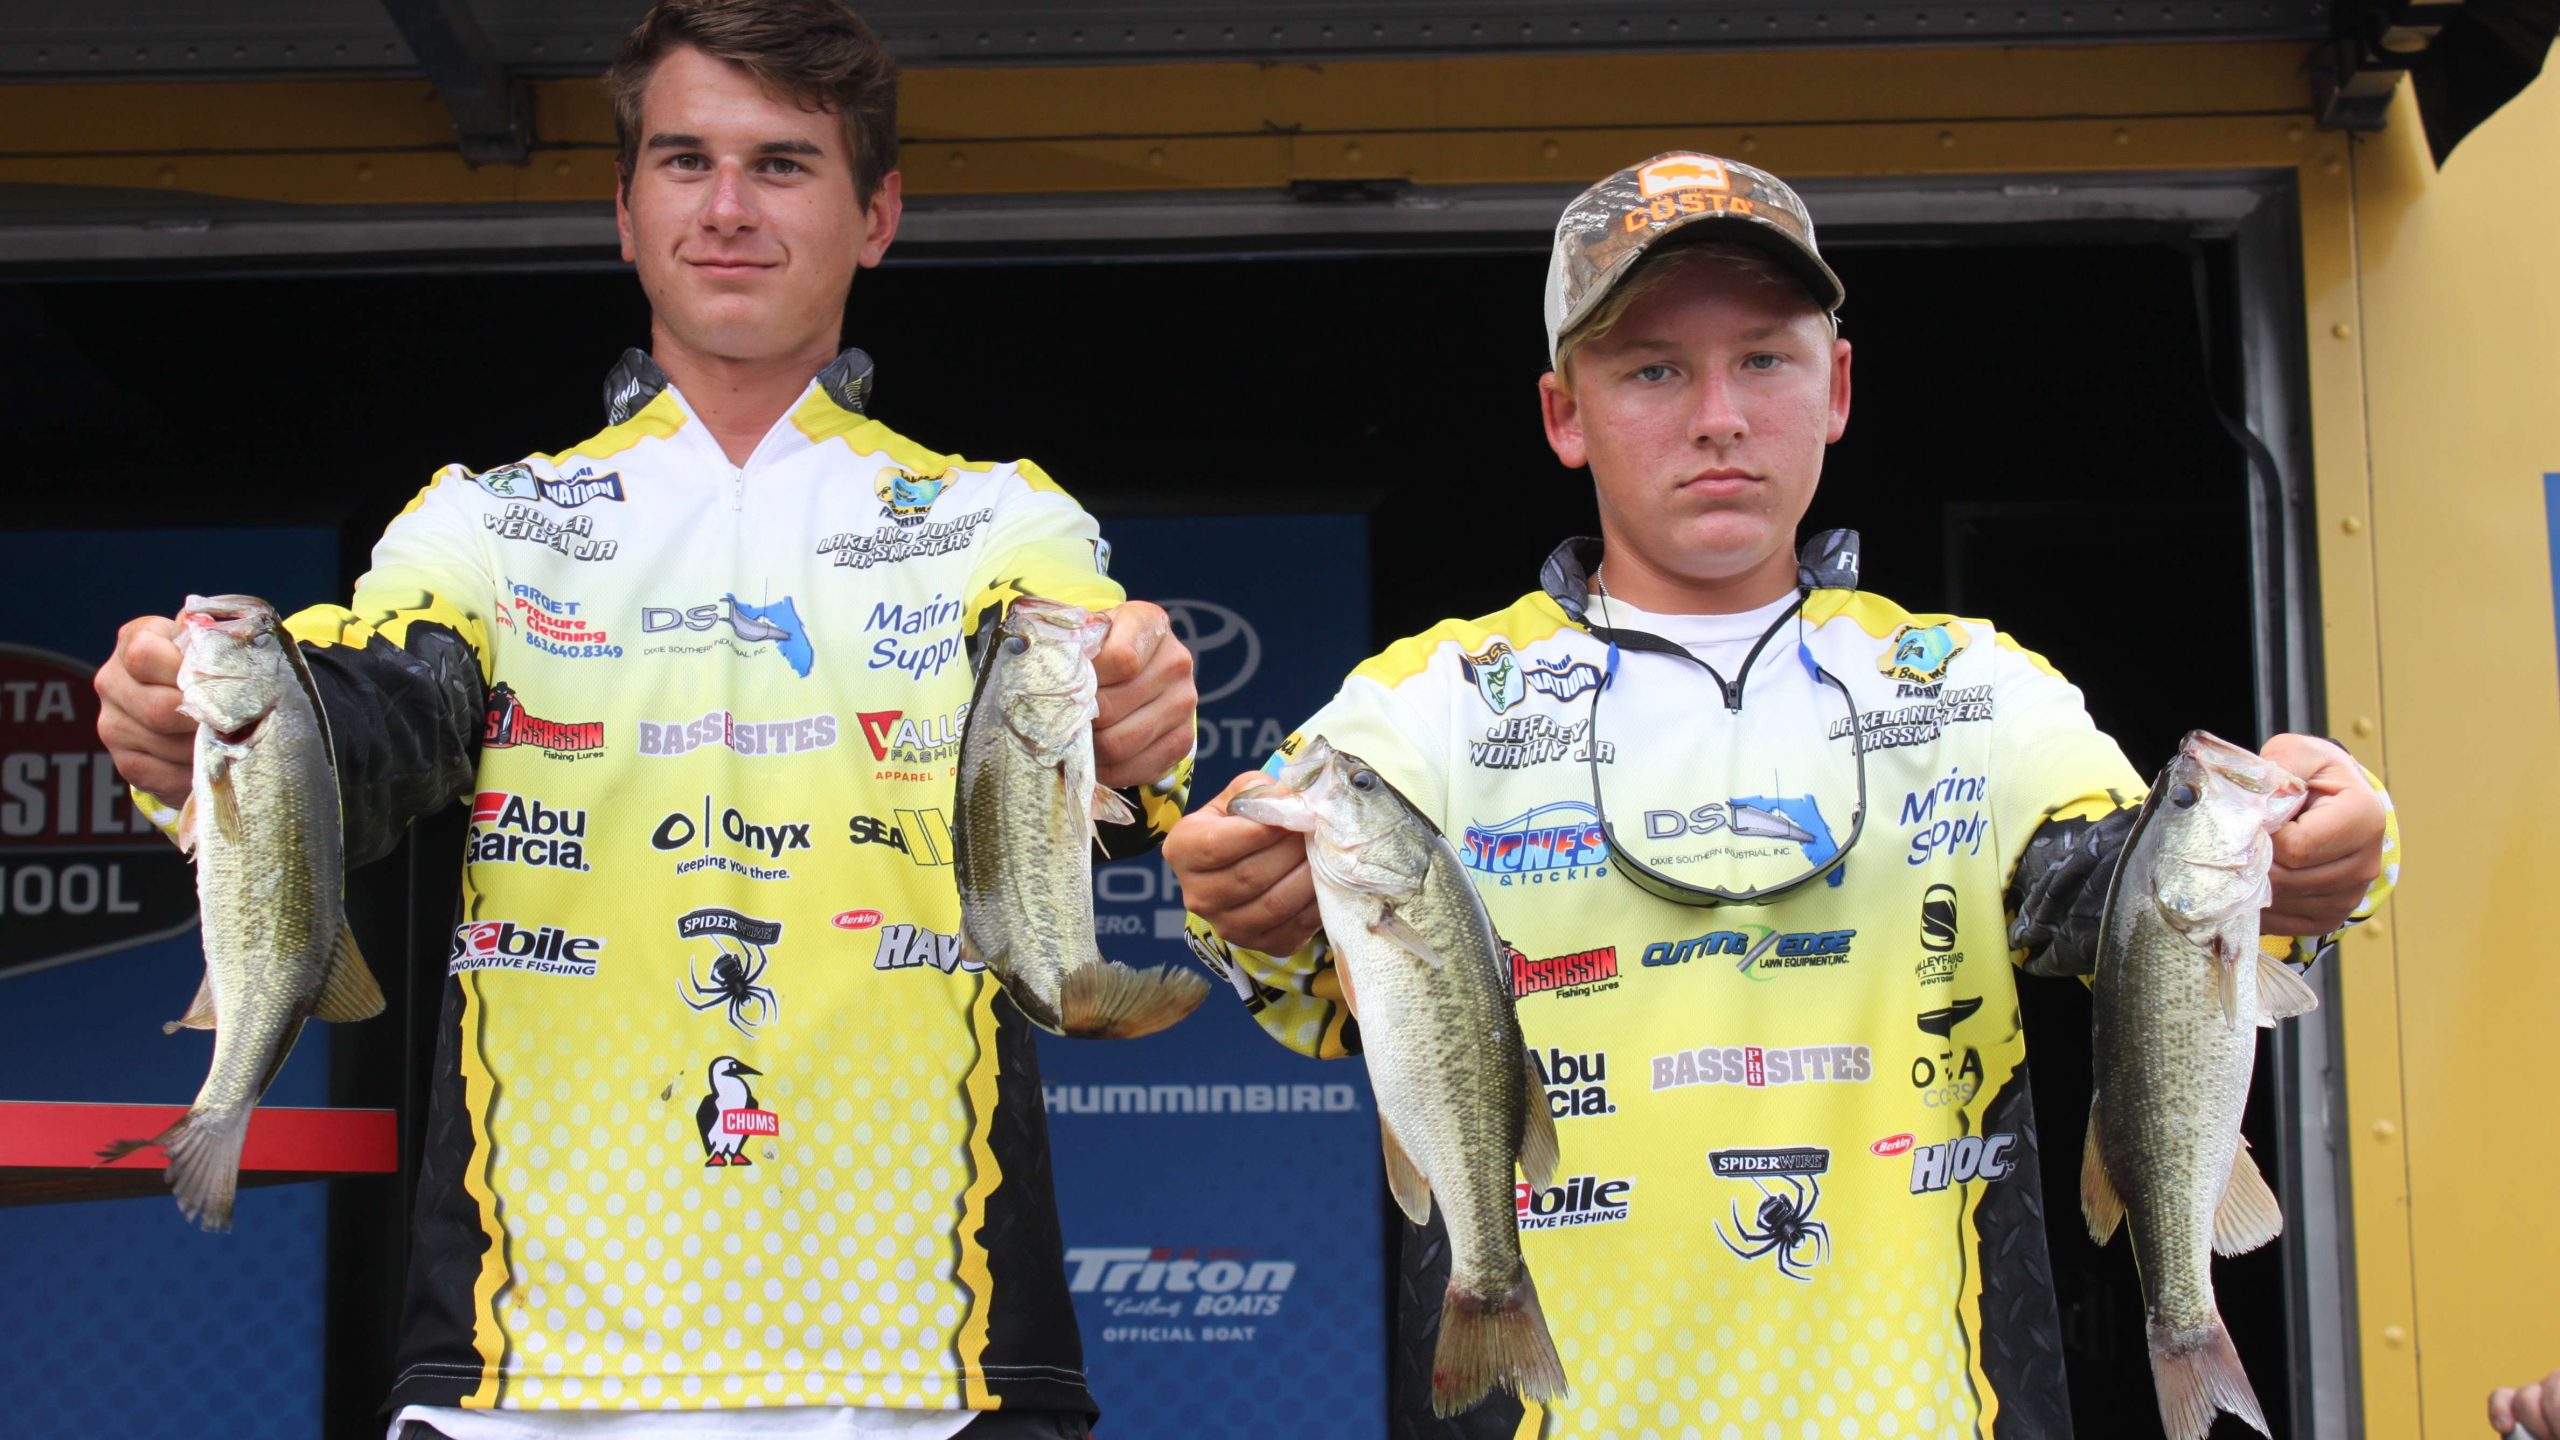 Floridaâs Roger Weigle Jr. and Jeffrey Worthy Jr. caught four fish that totaled 3-10. They are in 11th place.